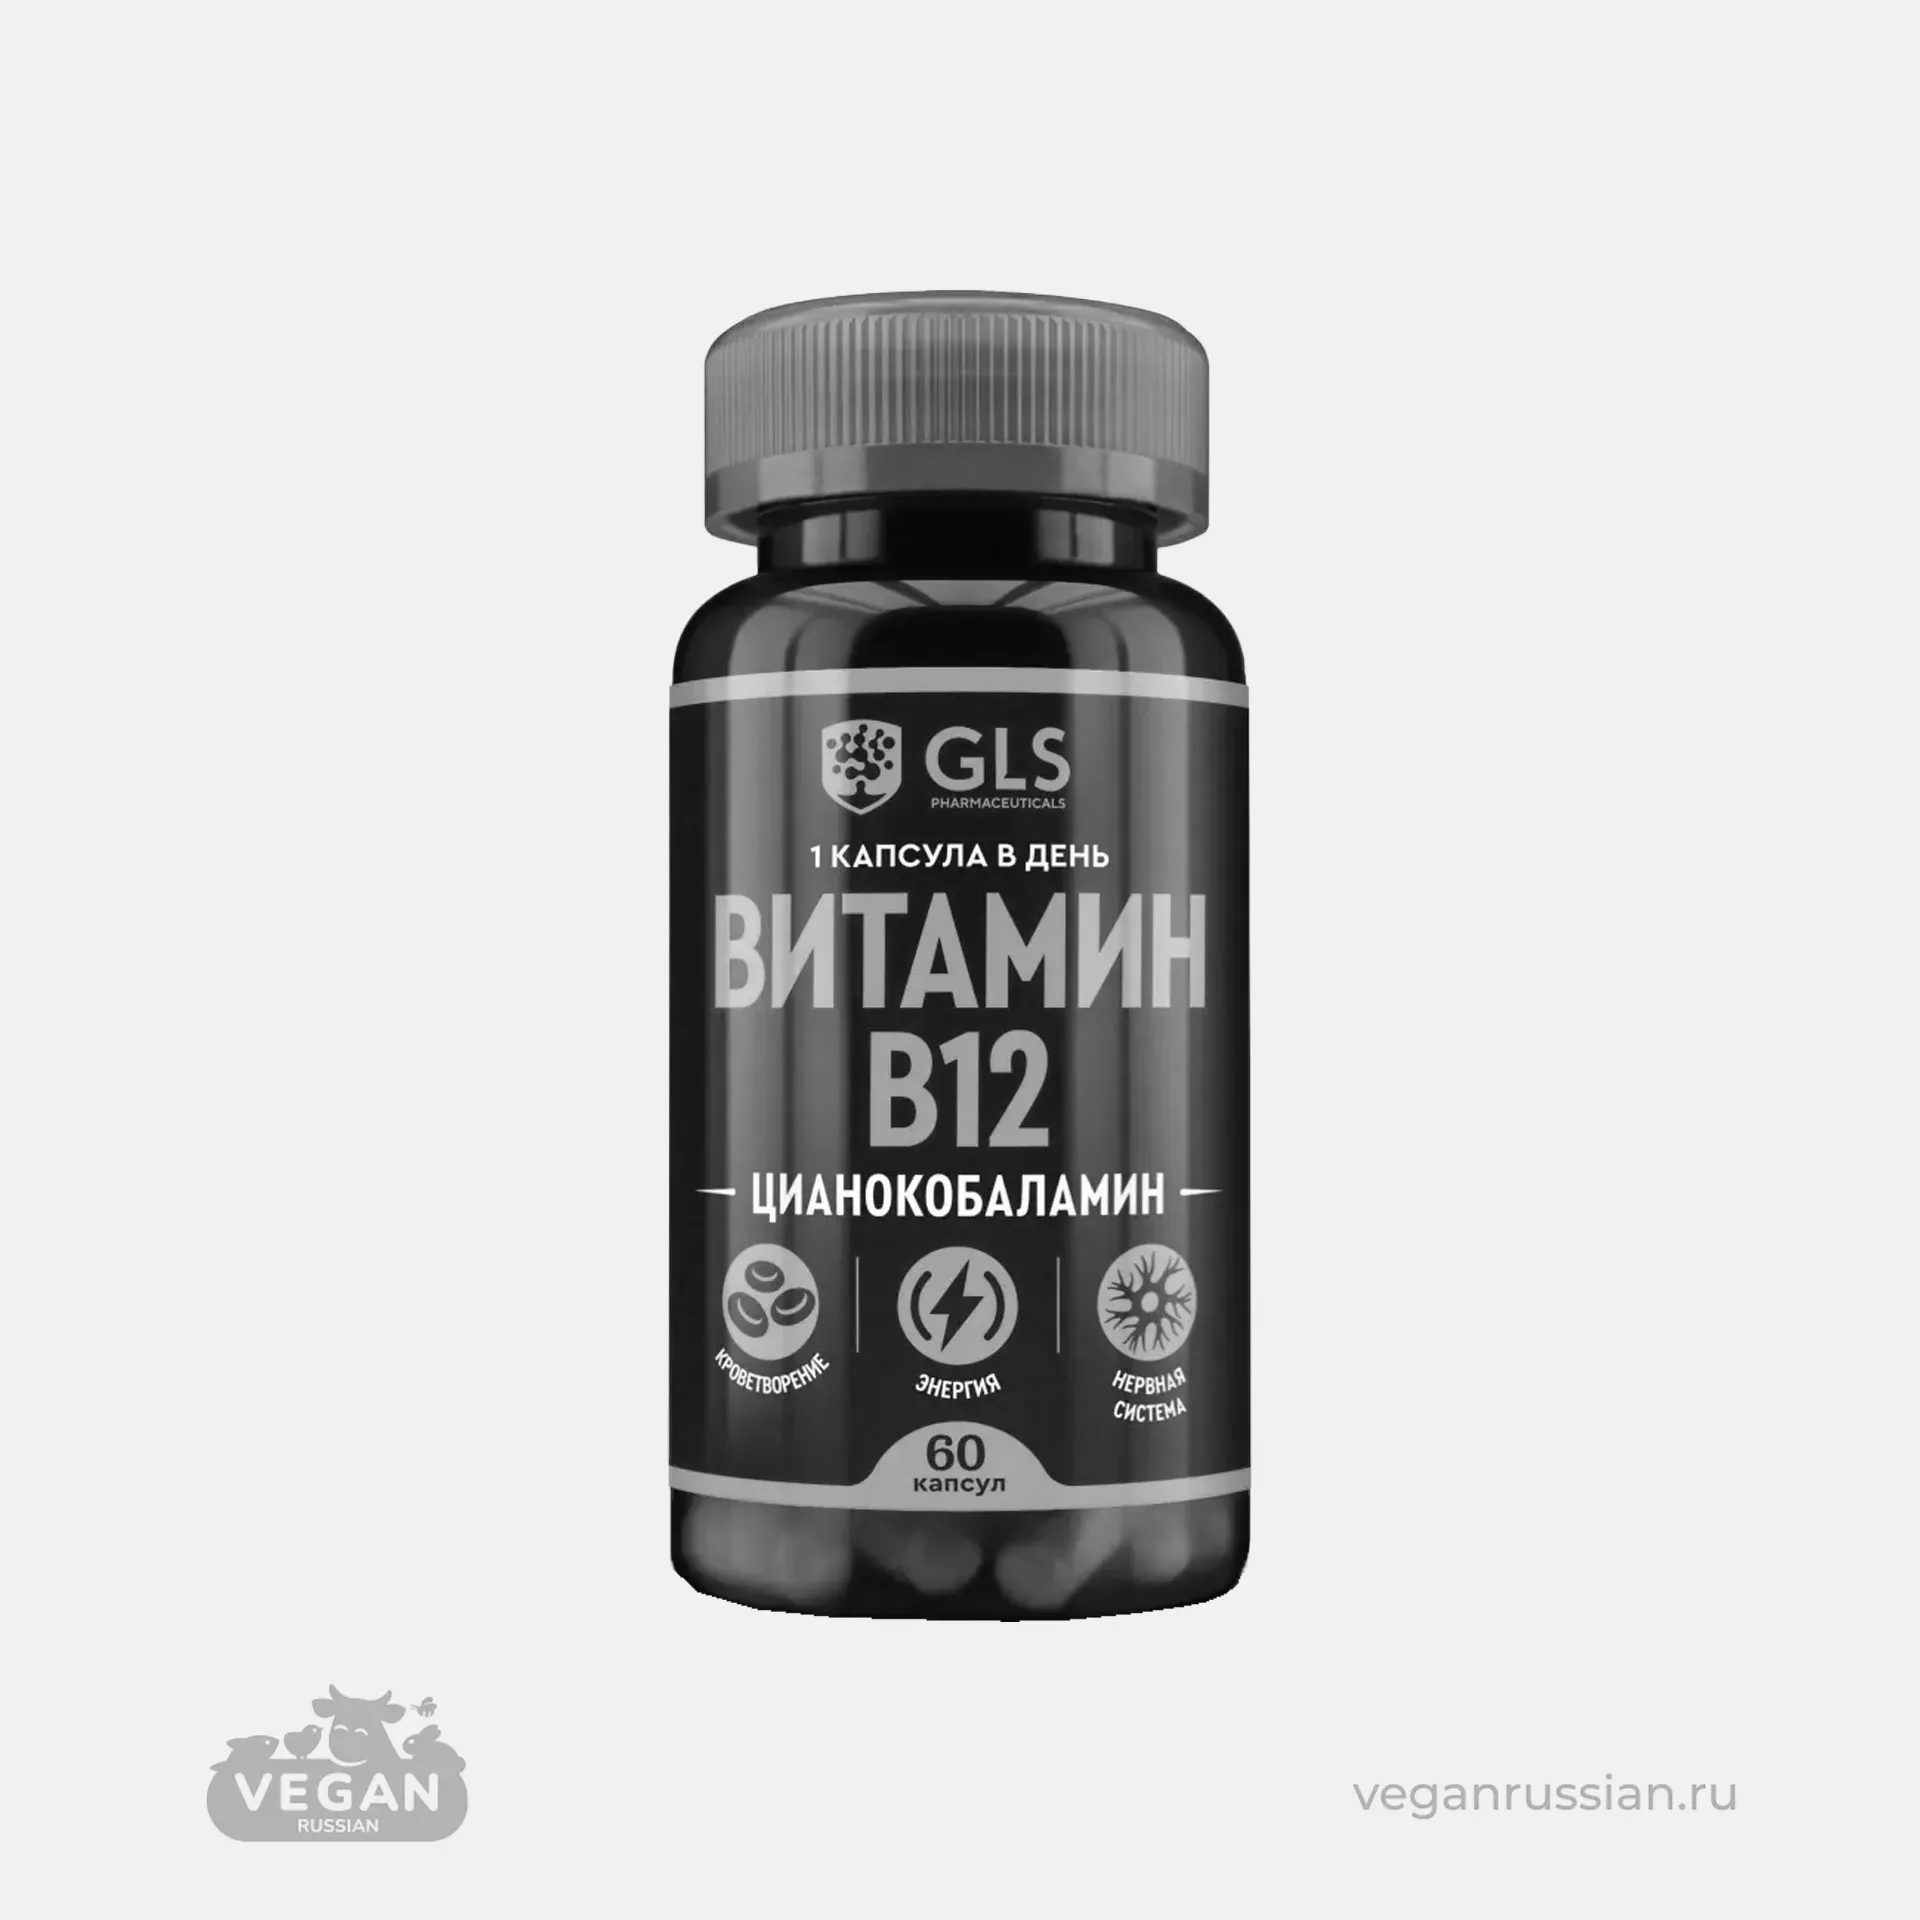 Архив: Витамин В12 Цианокобаламин GLS Pharmaceuticals 61 г